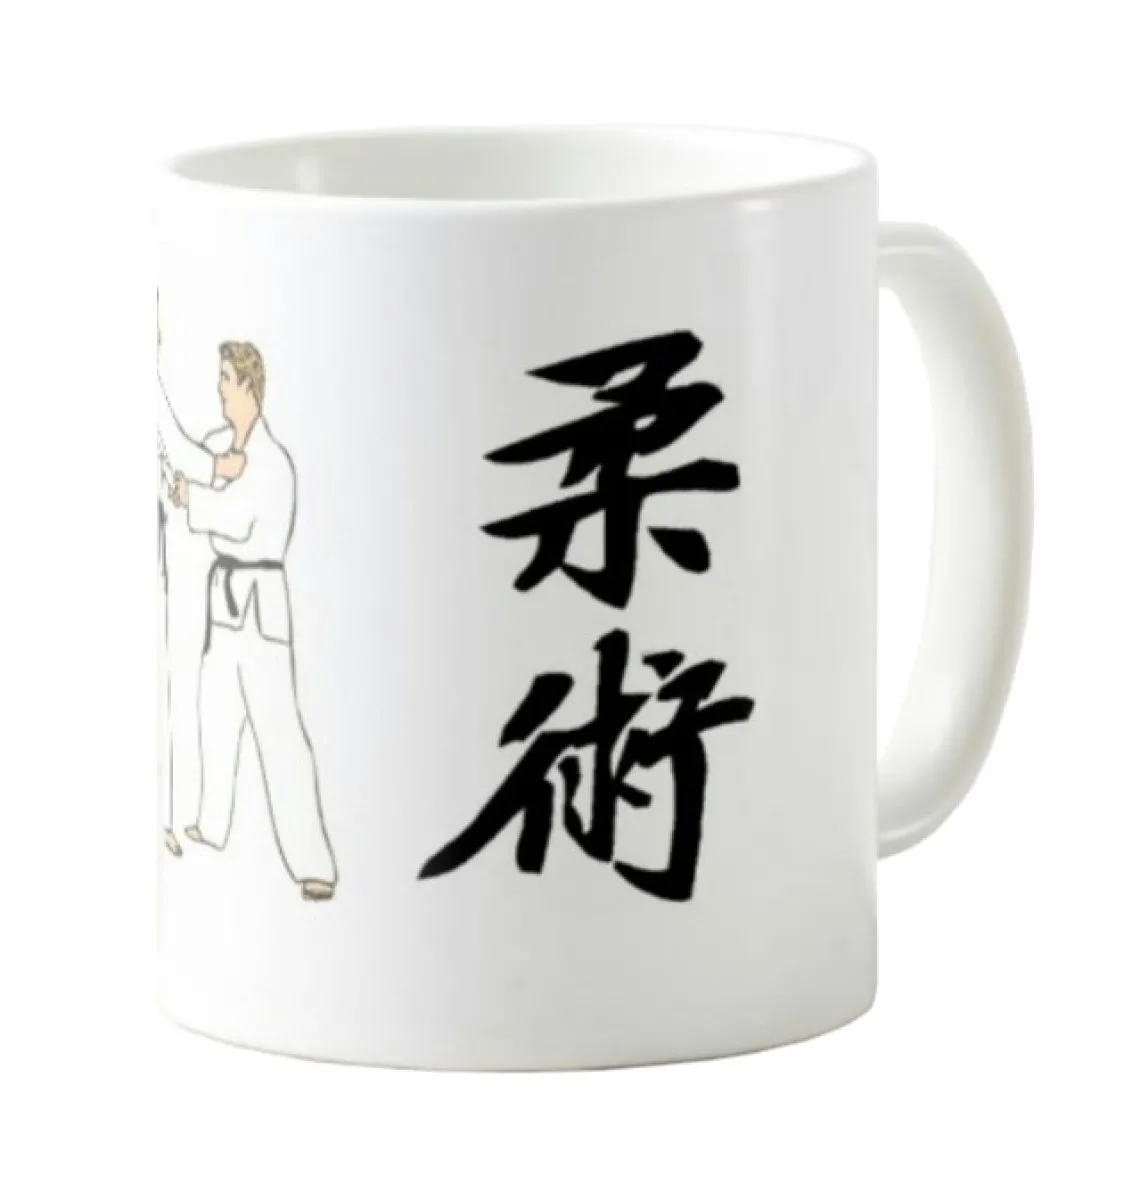 Mug - Coffee cup - Cup Ju-Jutsu